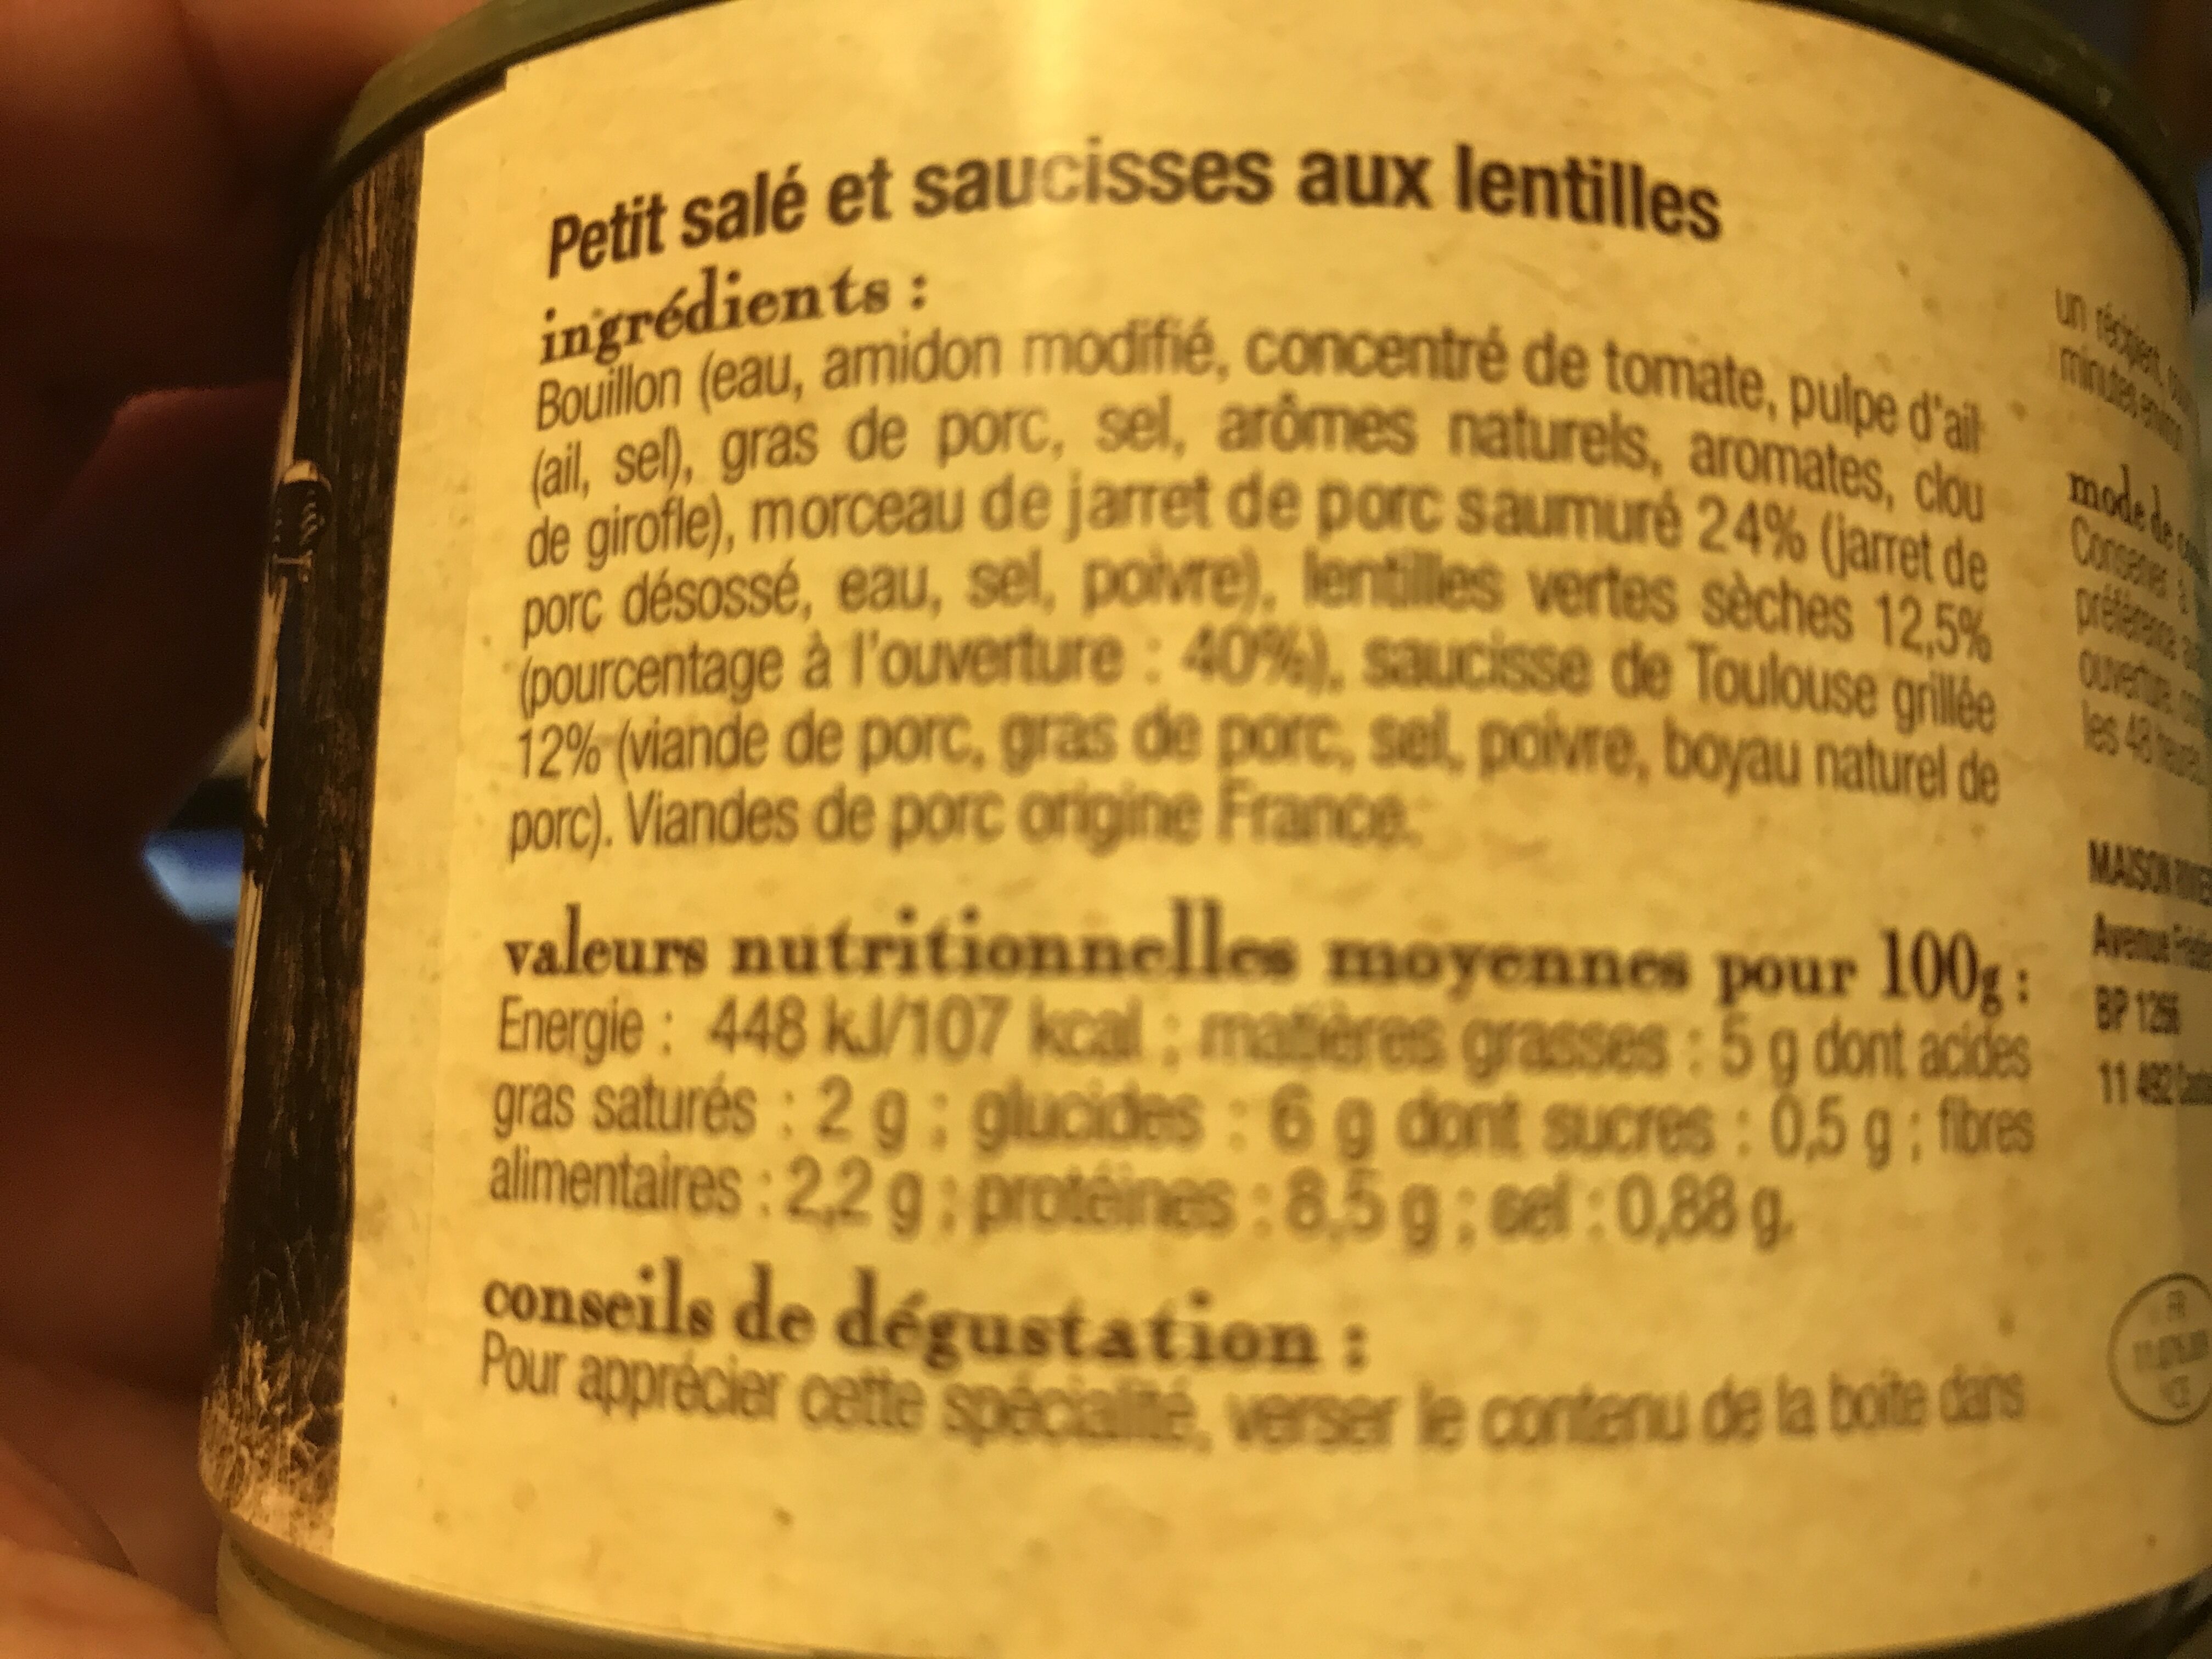 le petit salé et saucisse de Toulouse aux lentilles, boîte 1/2 - Nutrition facts - fr